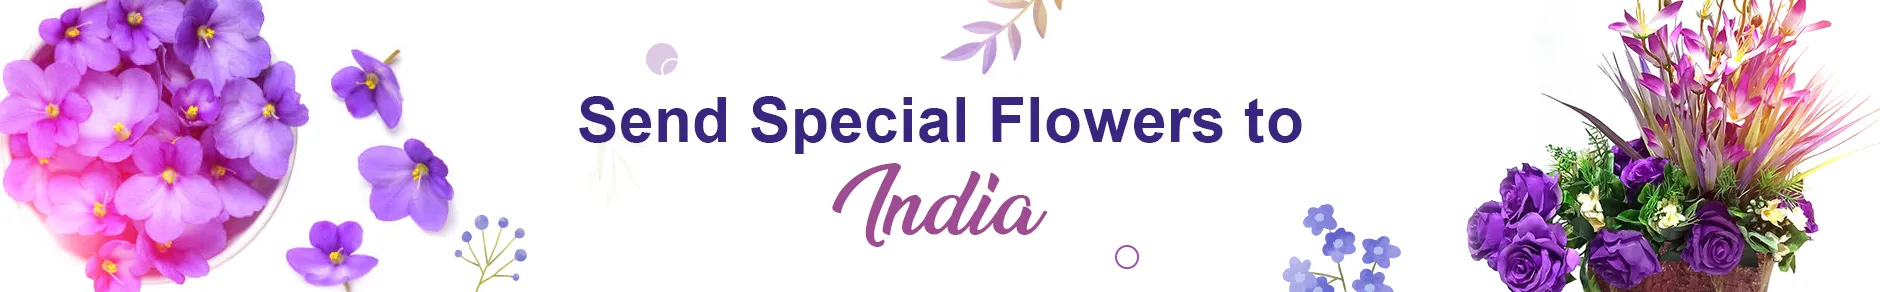 Special Flowers - Order Premium Floral Arrangements